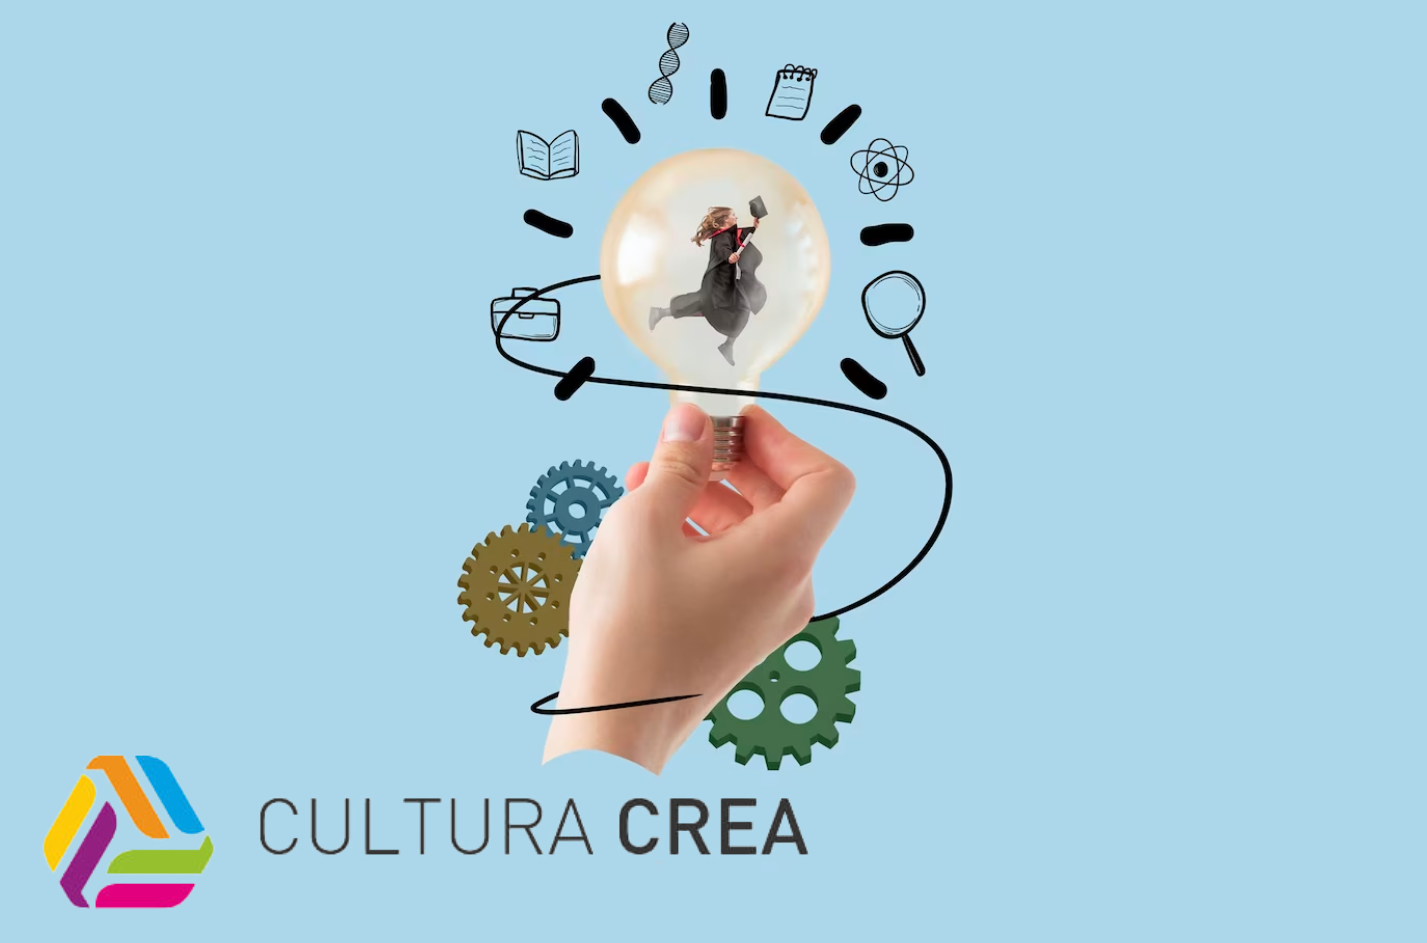 Cultura crea